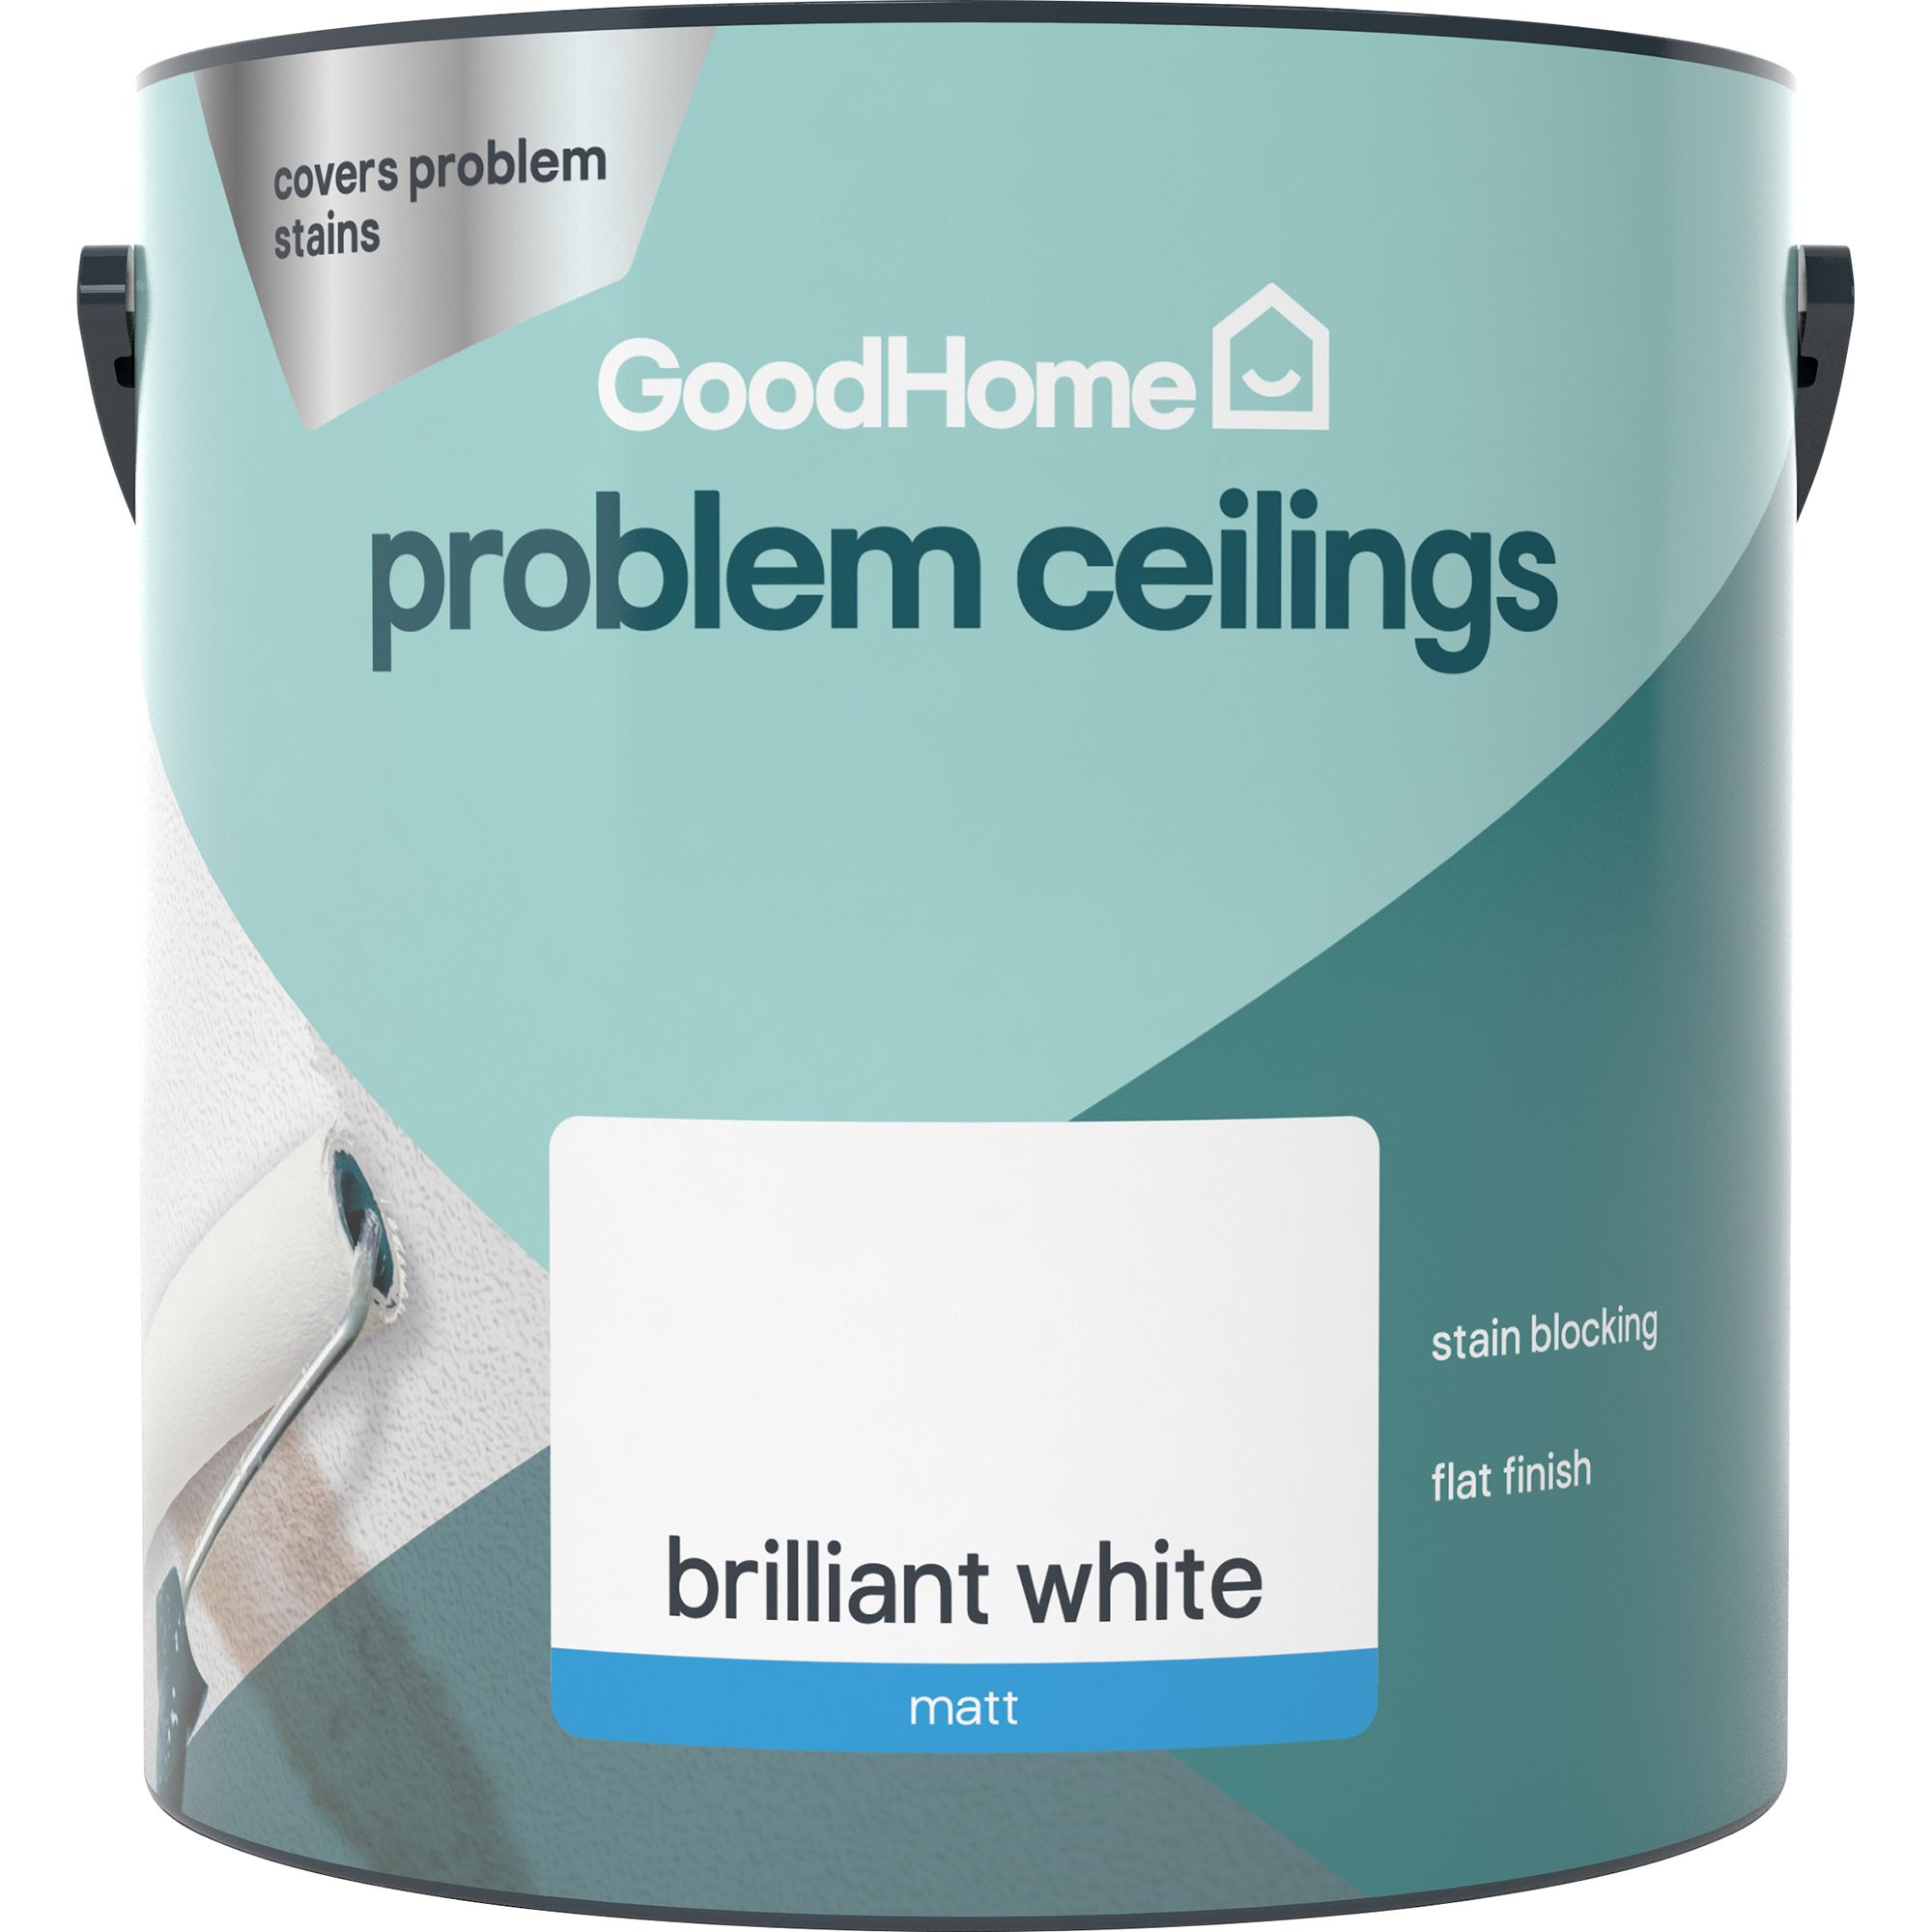 GoodHome Problem ceilings Brilliant white Matt Emulsion paint, 2.5L